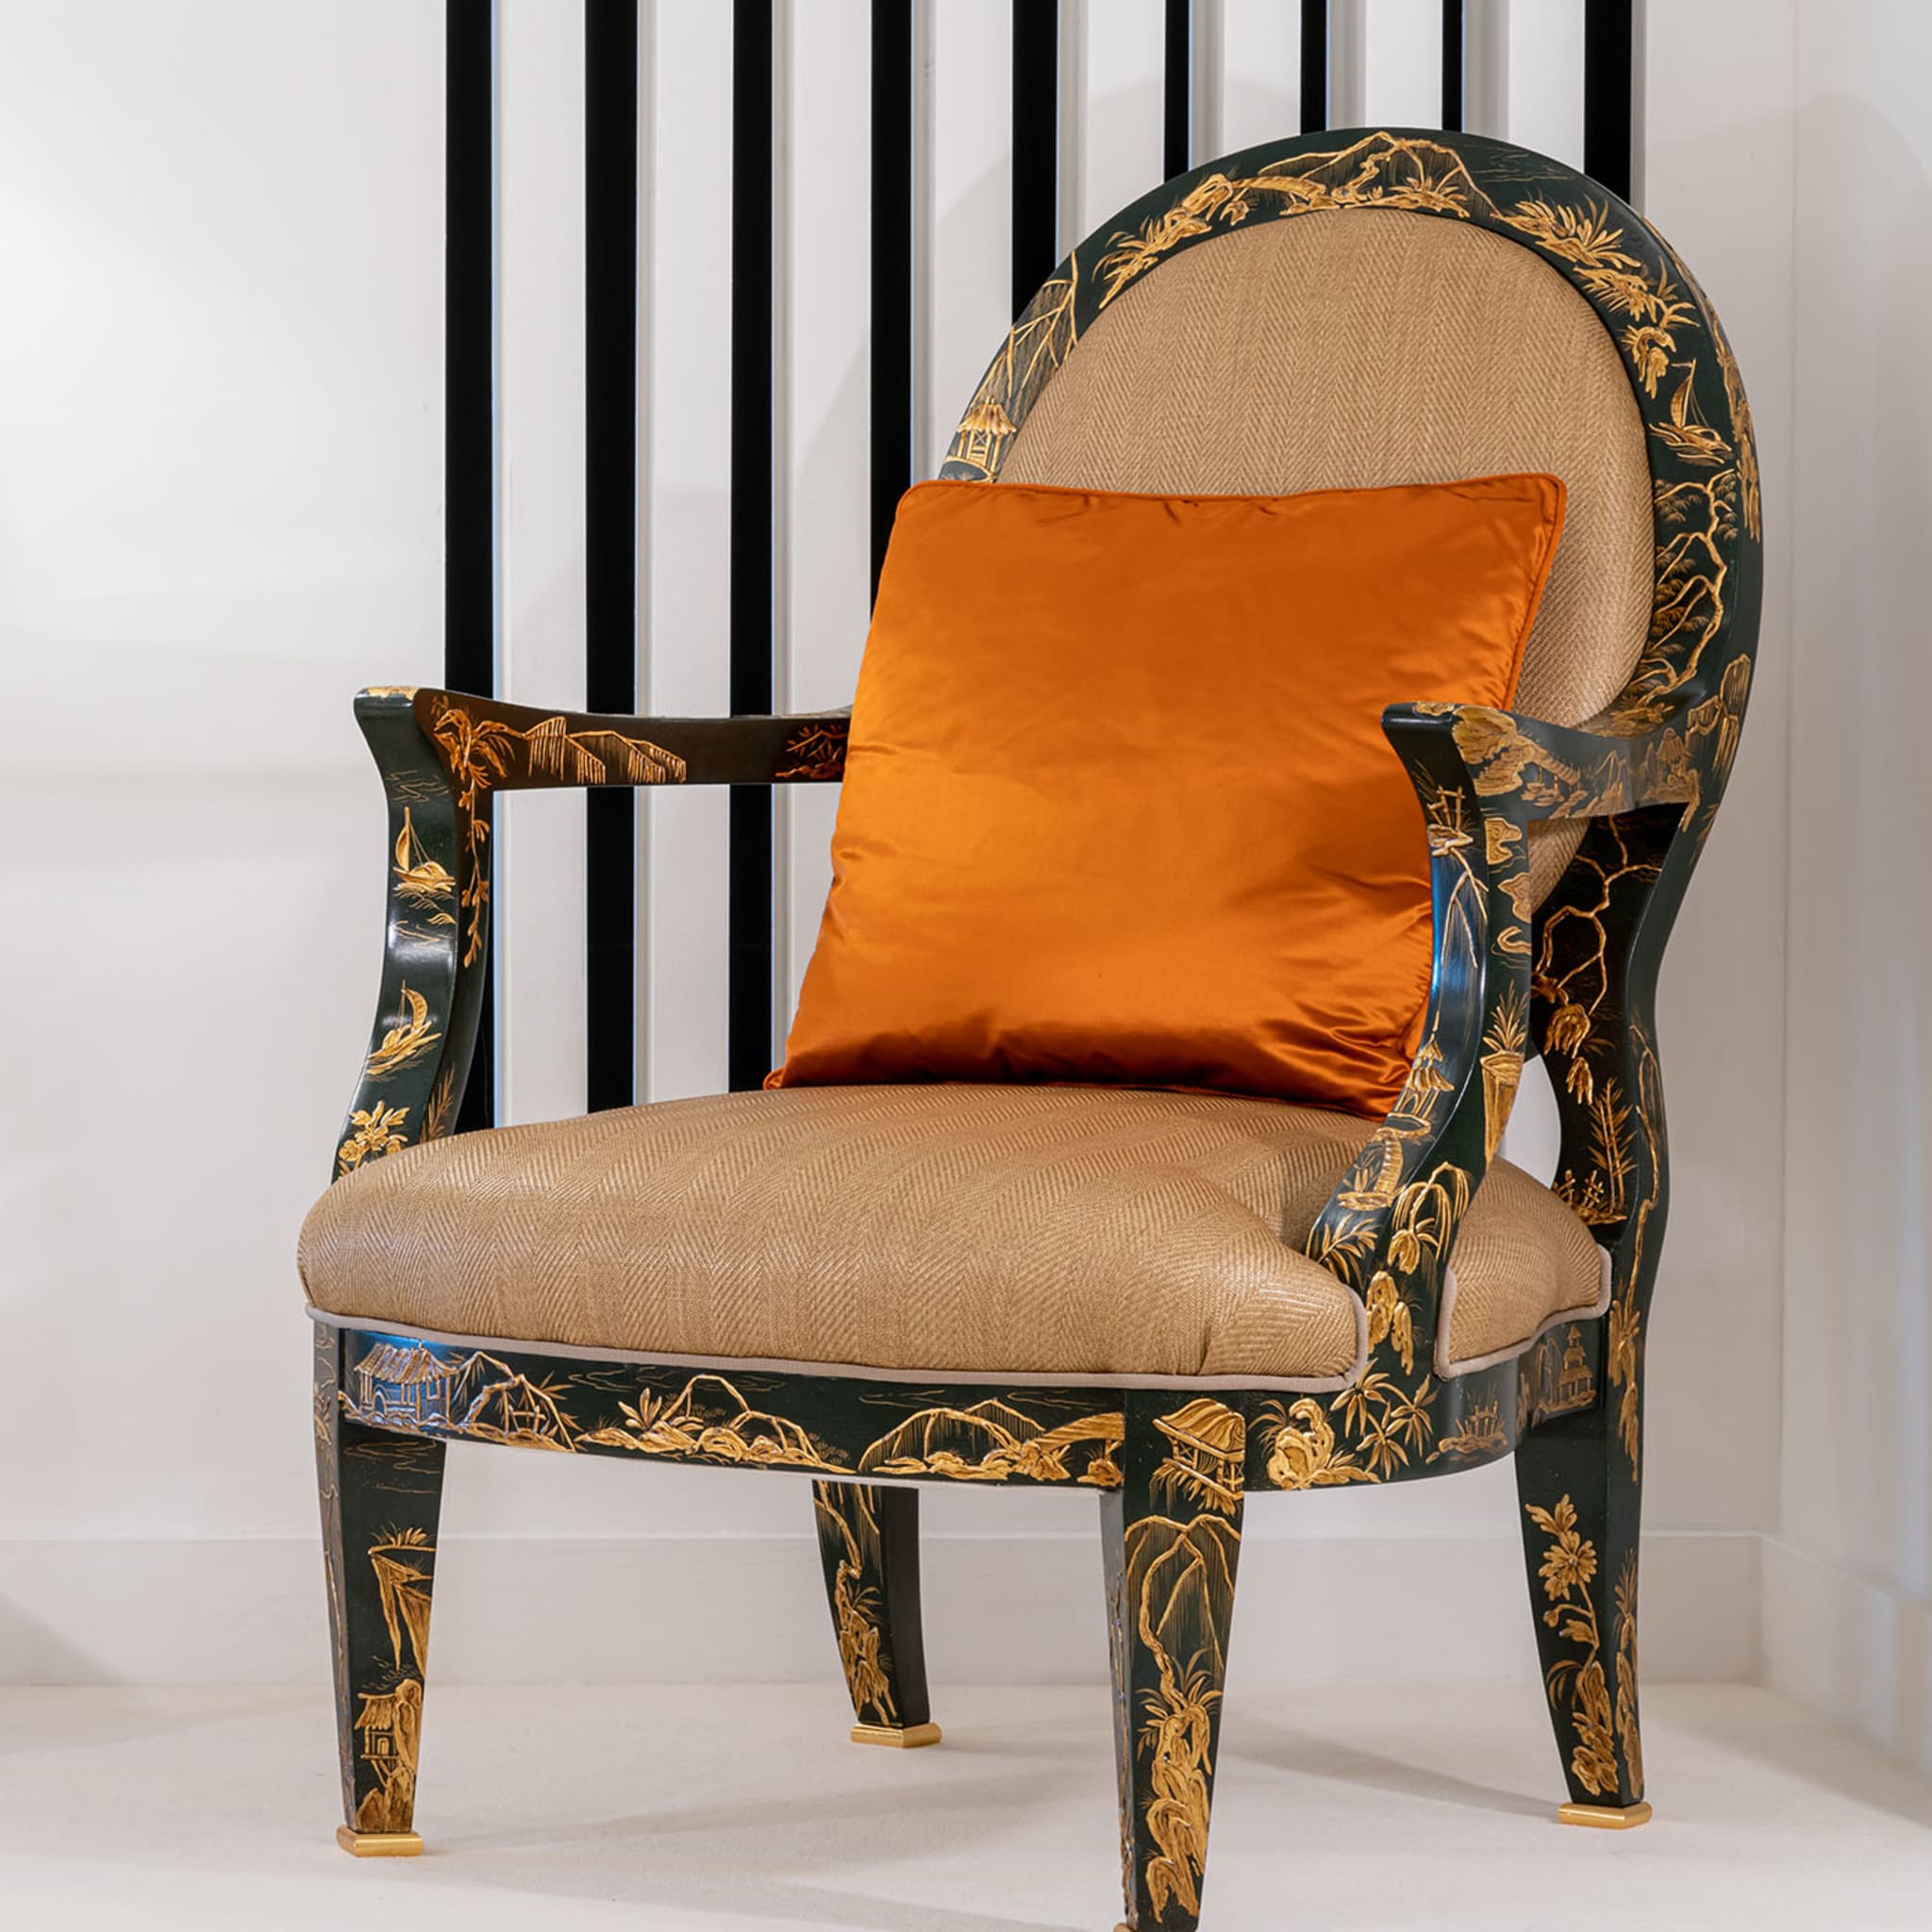 Deco-Style Dark-Green & Golden Armchair  - Alternative view 2